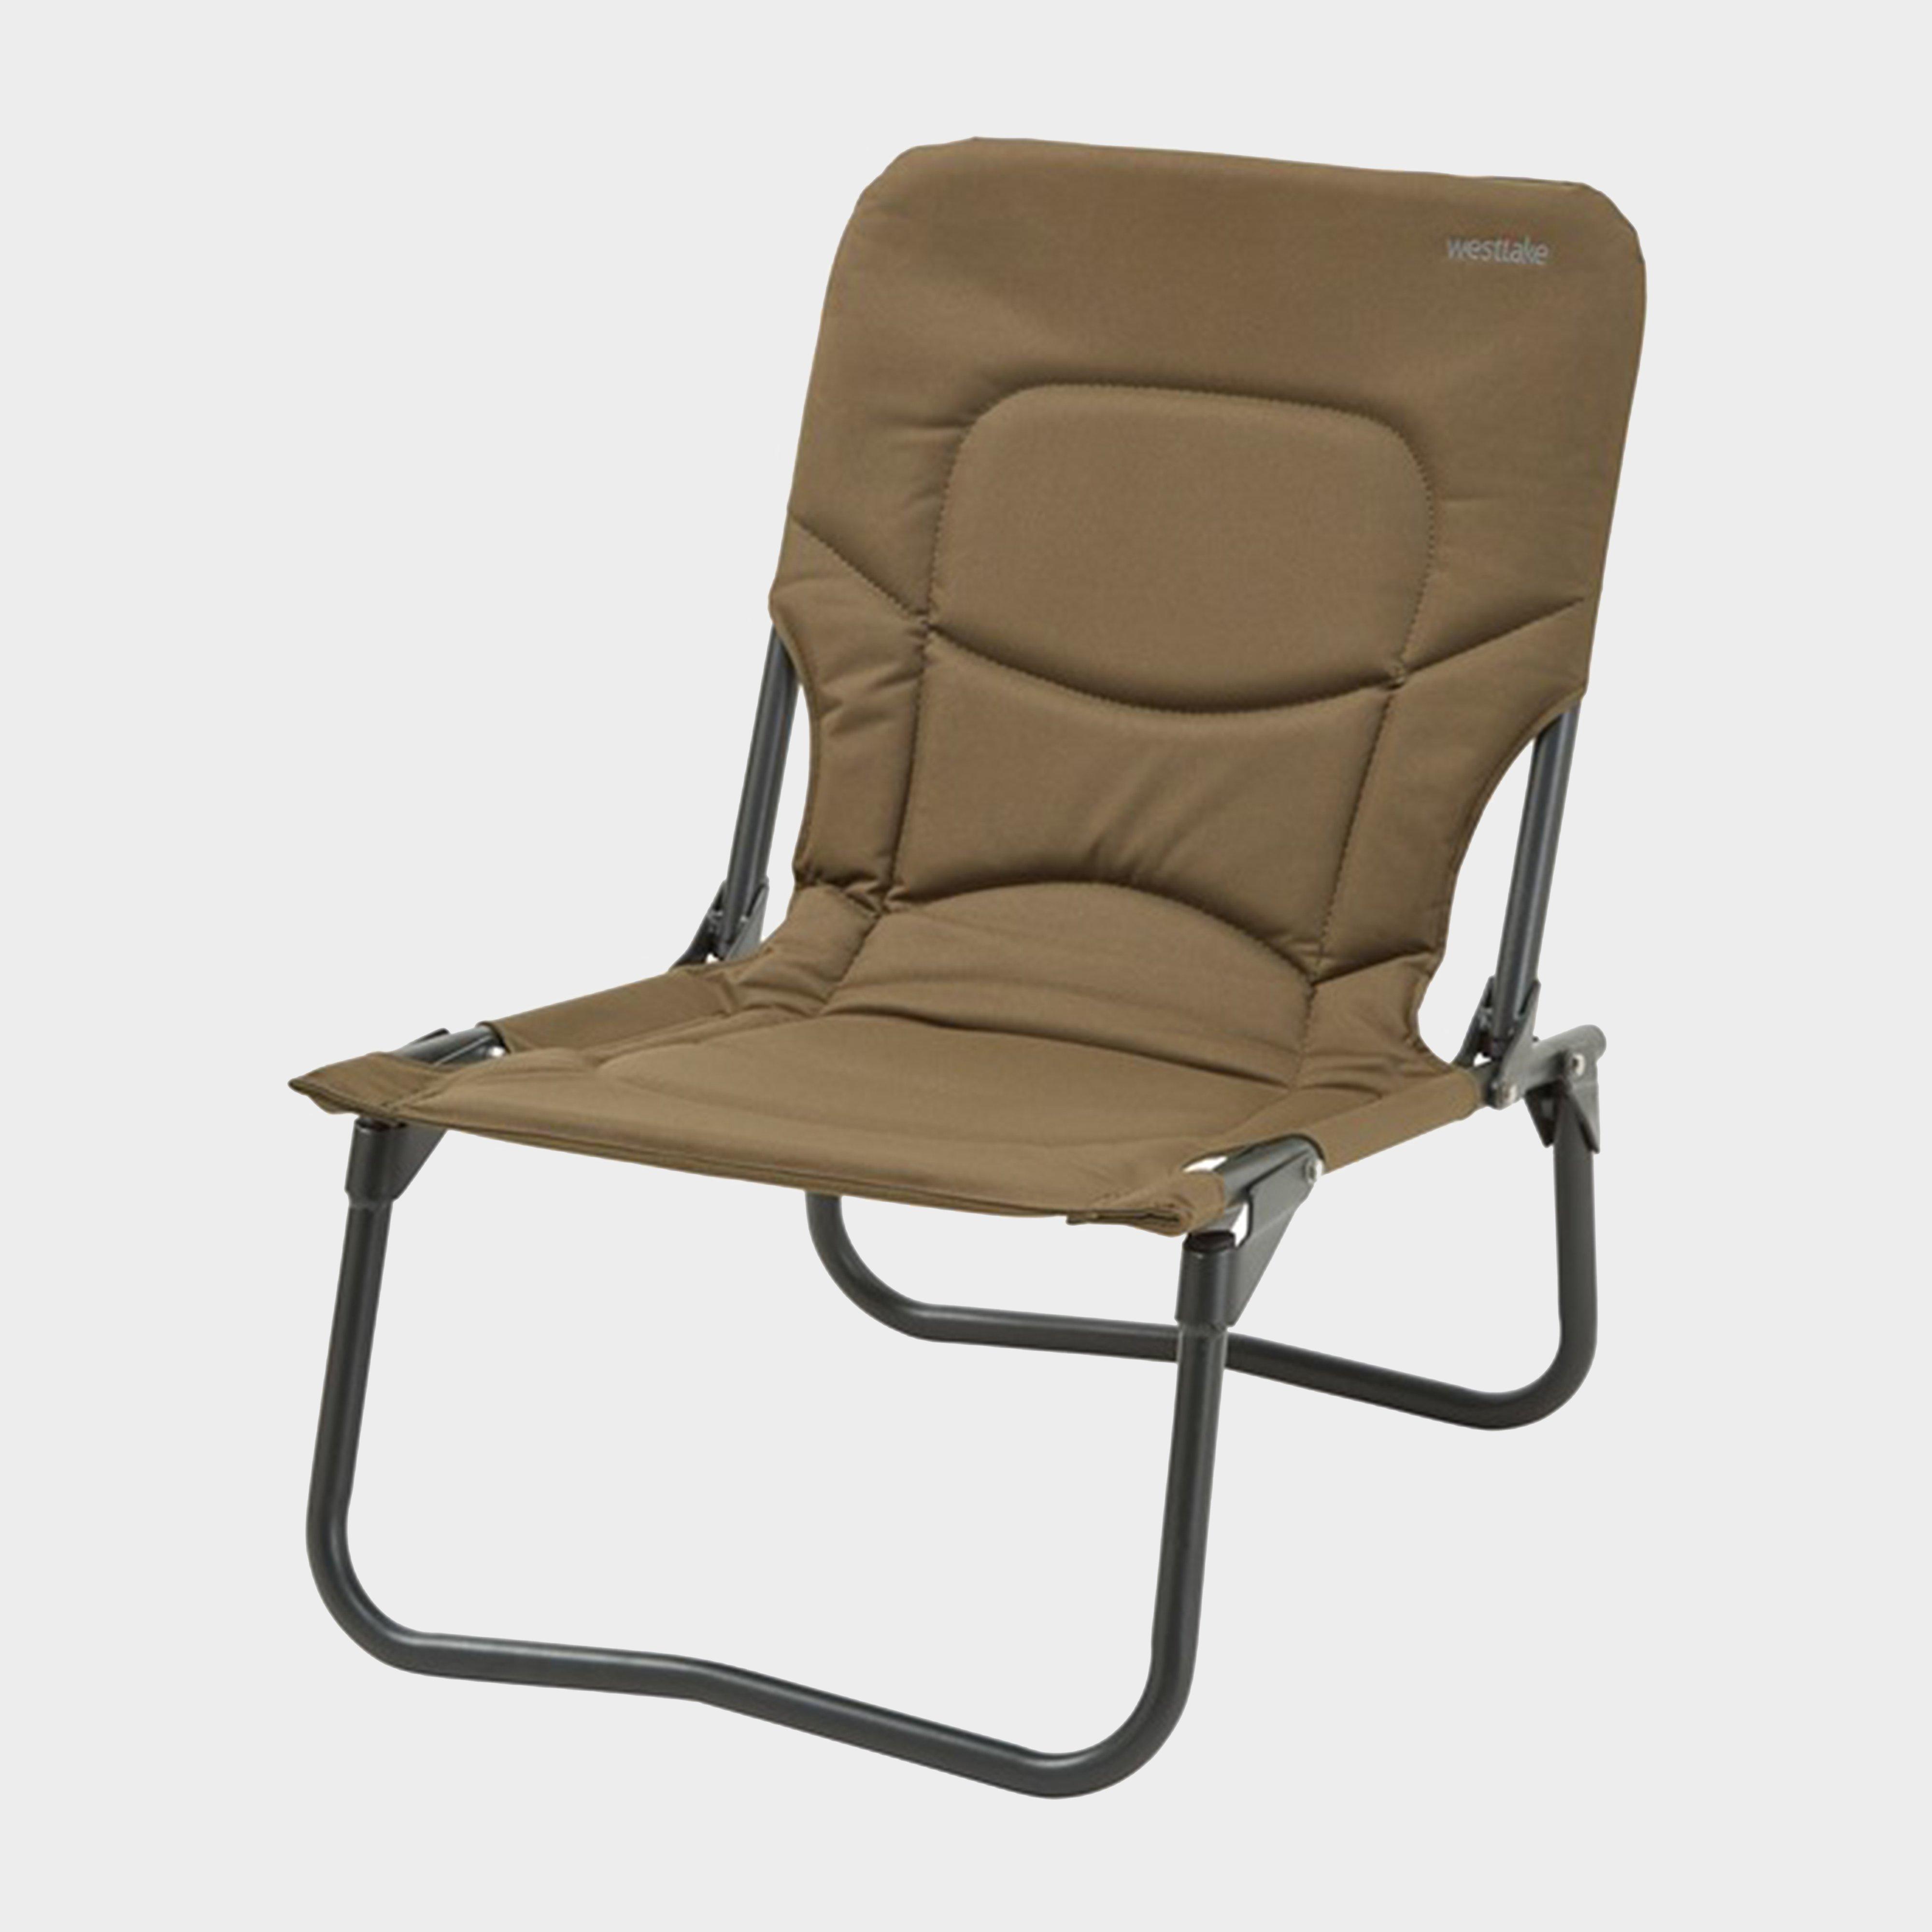 Westlake Ultra-lite Chair - Chair/chair  Chair/chair